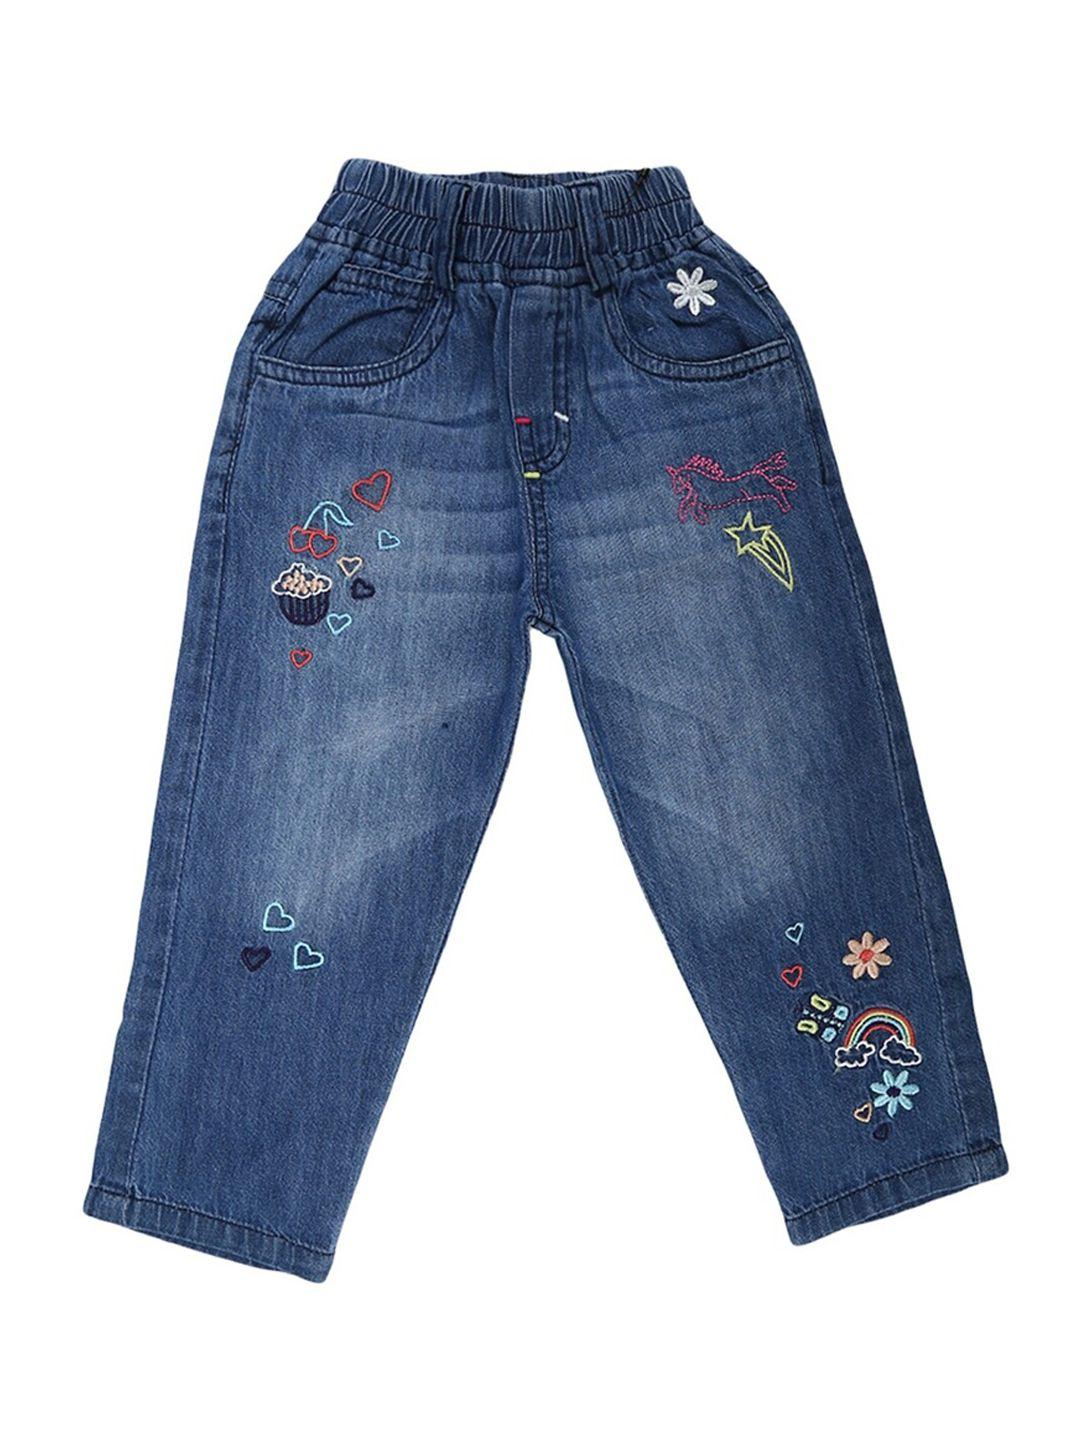 v-mart unisex kids blue embroidered light fade jeans